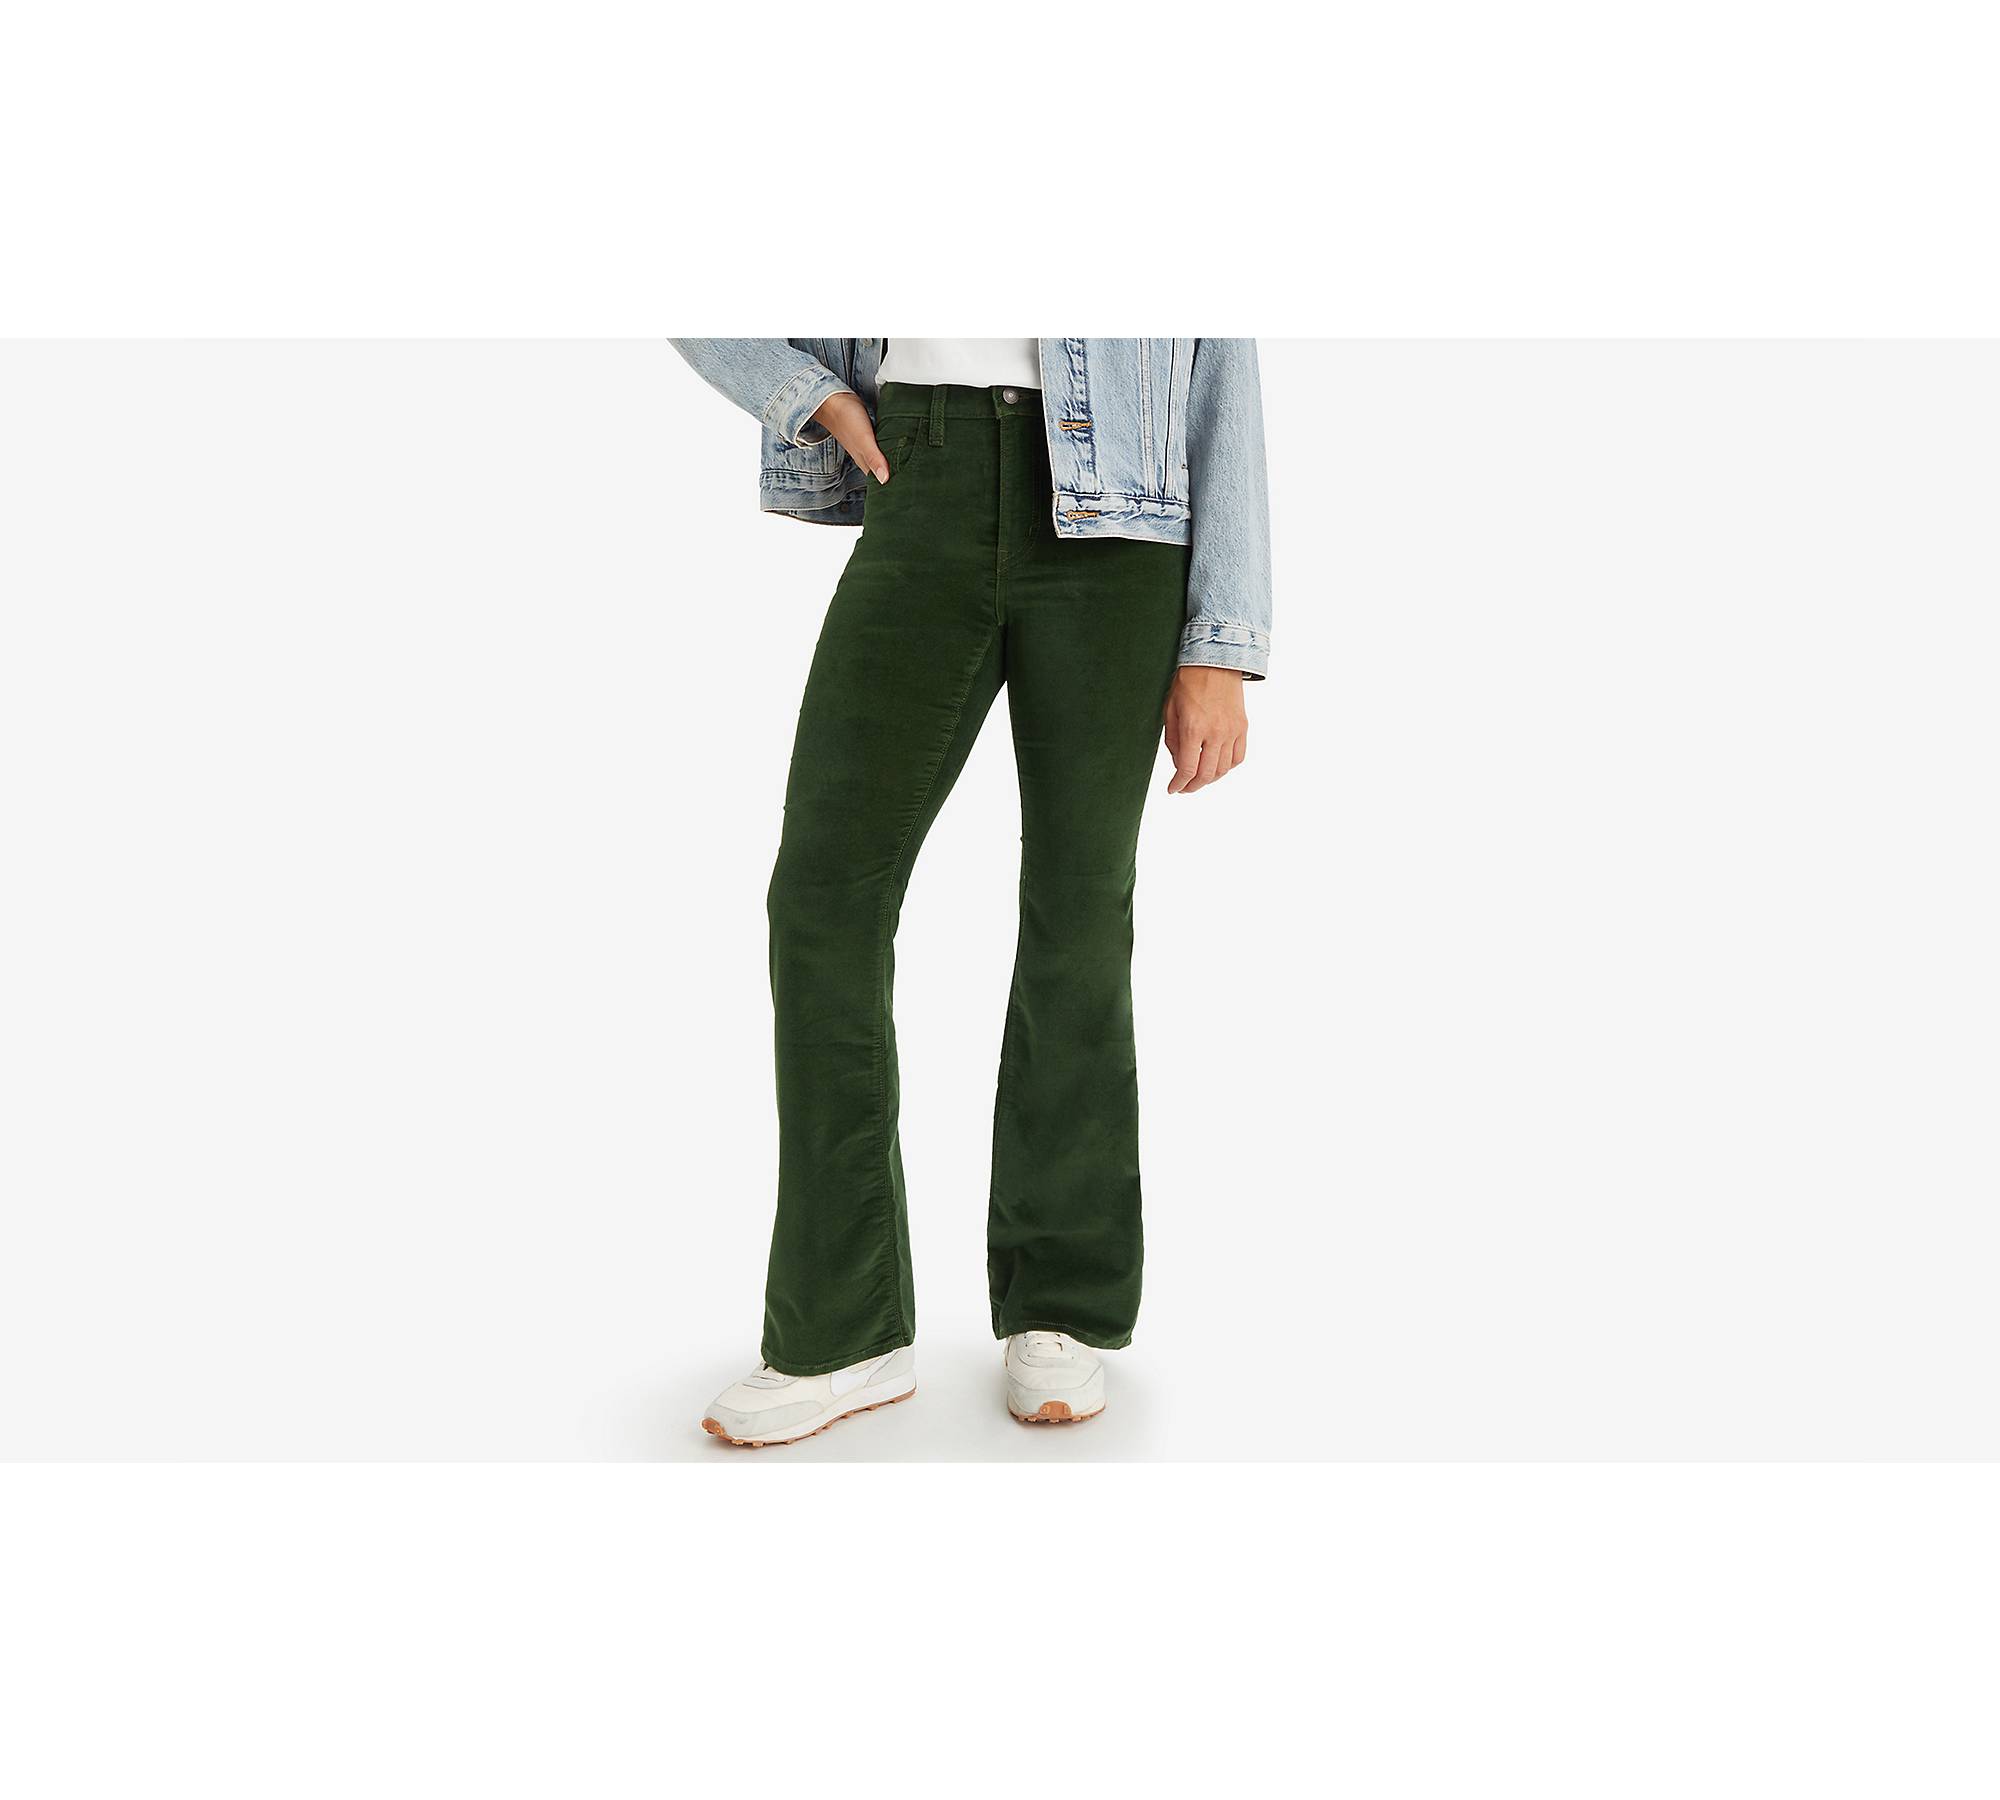 Corduroy pants: High Waisted Green Corduroy pants